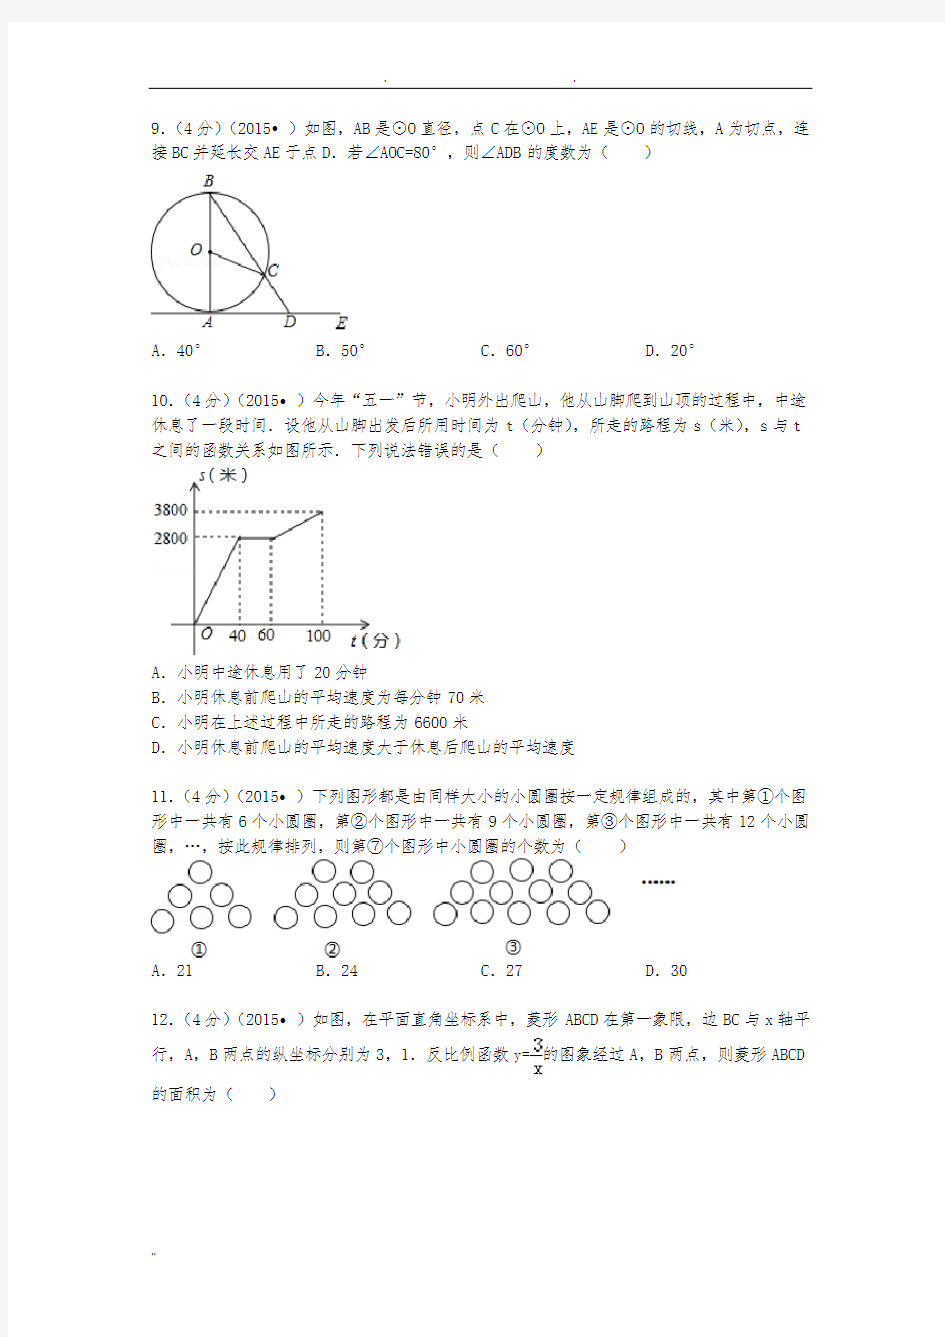 2015年重庆市中考数学试题(A卷)及解析